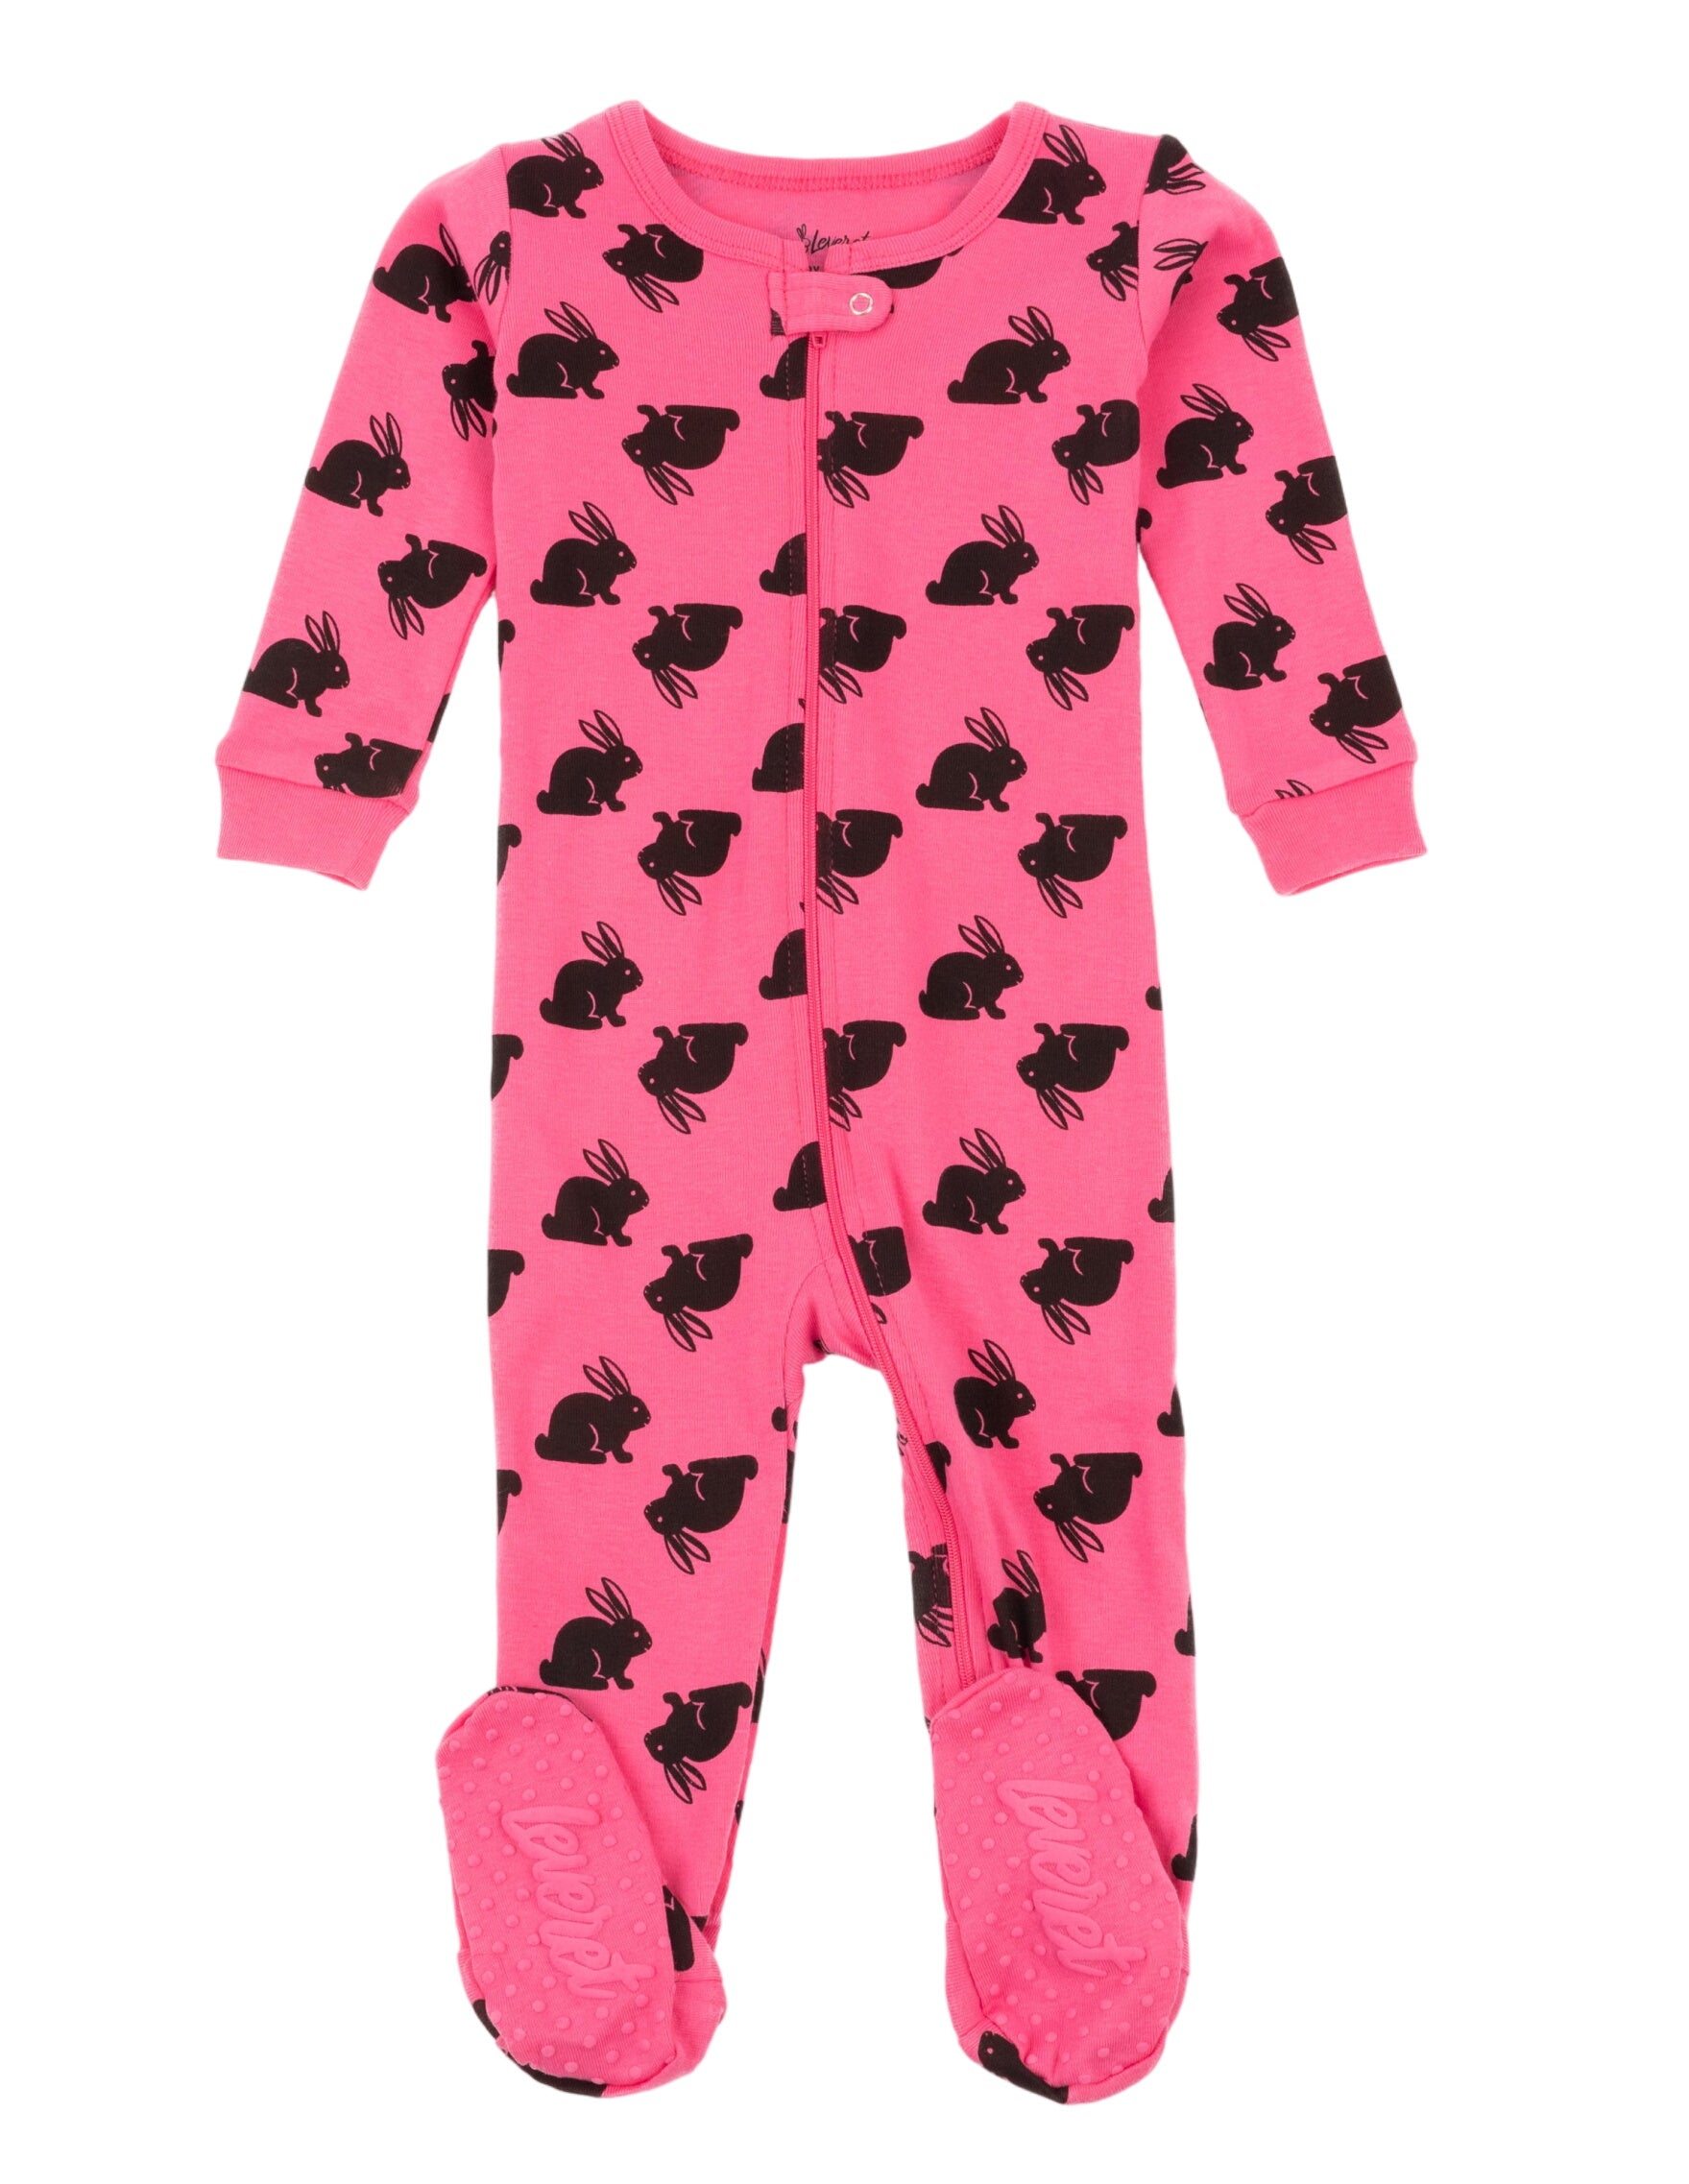 Baby Footed Hot Pink Bunny Pajamas